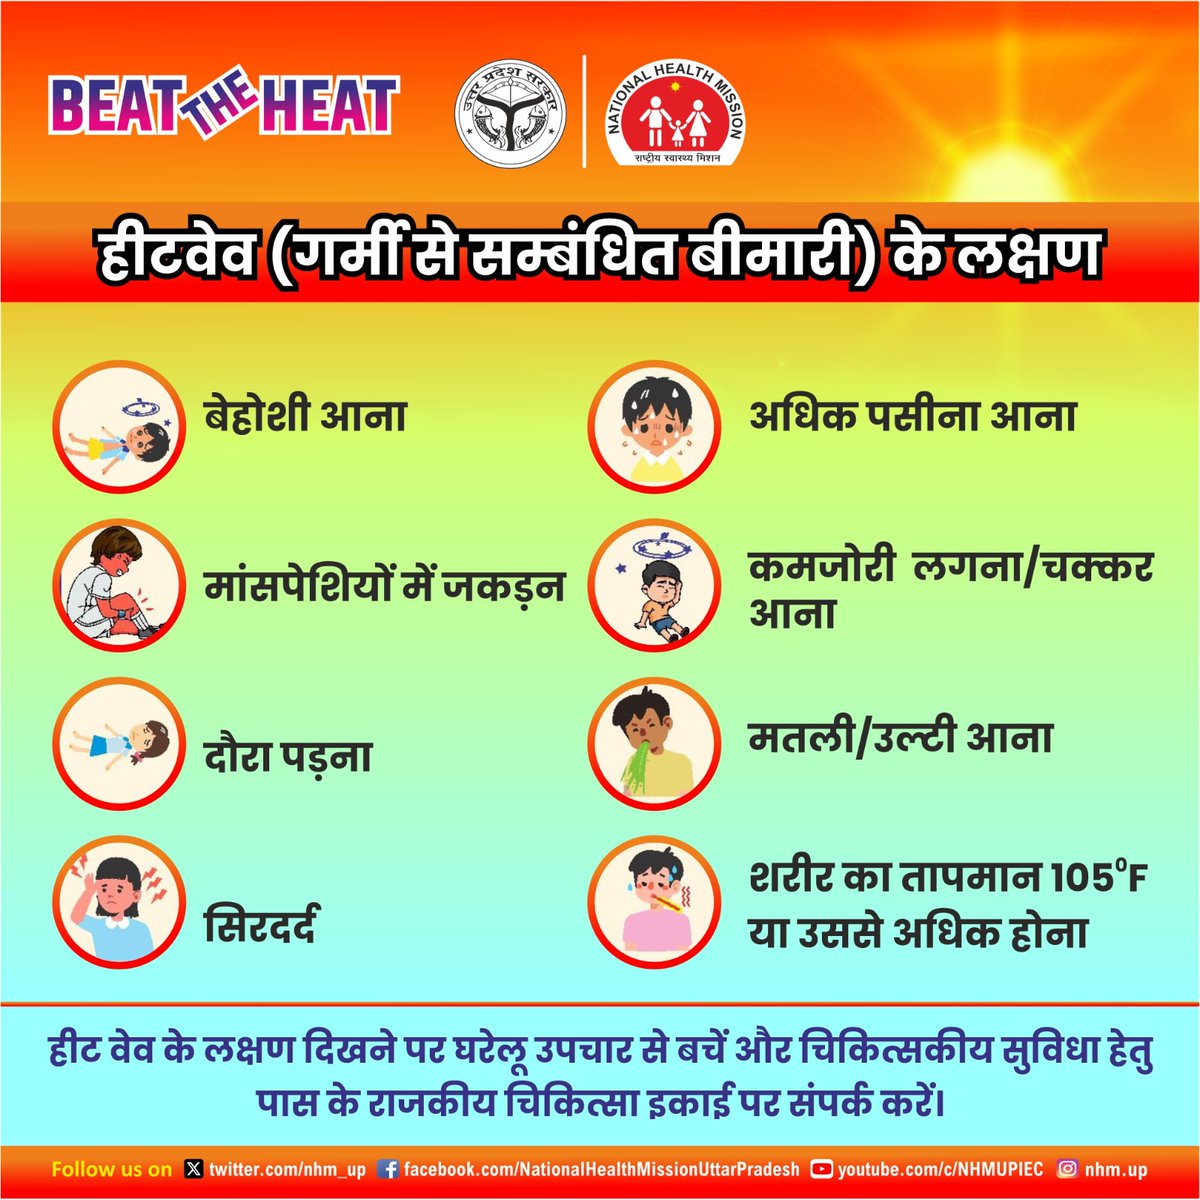 #Beattheheat 📌क्या आपको #हीटवेव (गर्मी से सम्बन्धित बीमारी) के लक्षणों के बारे में पता है 🤔 📌यदि नहीं तो इस पोस्ट के माध्यम से प्राप्त करते हैं जानकारी 👇🏻 #Heatwave #Heat #healthcare